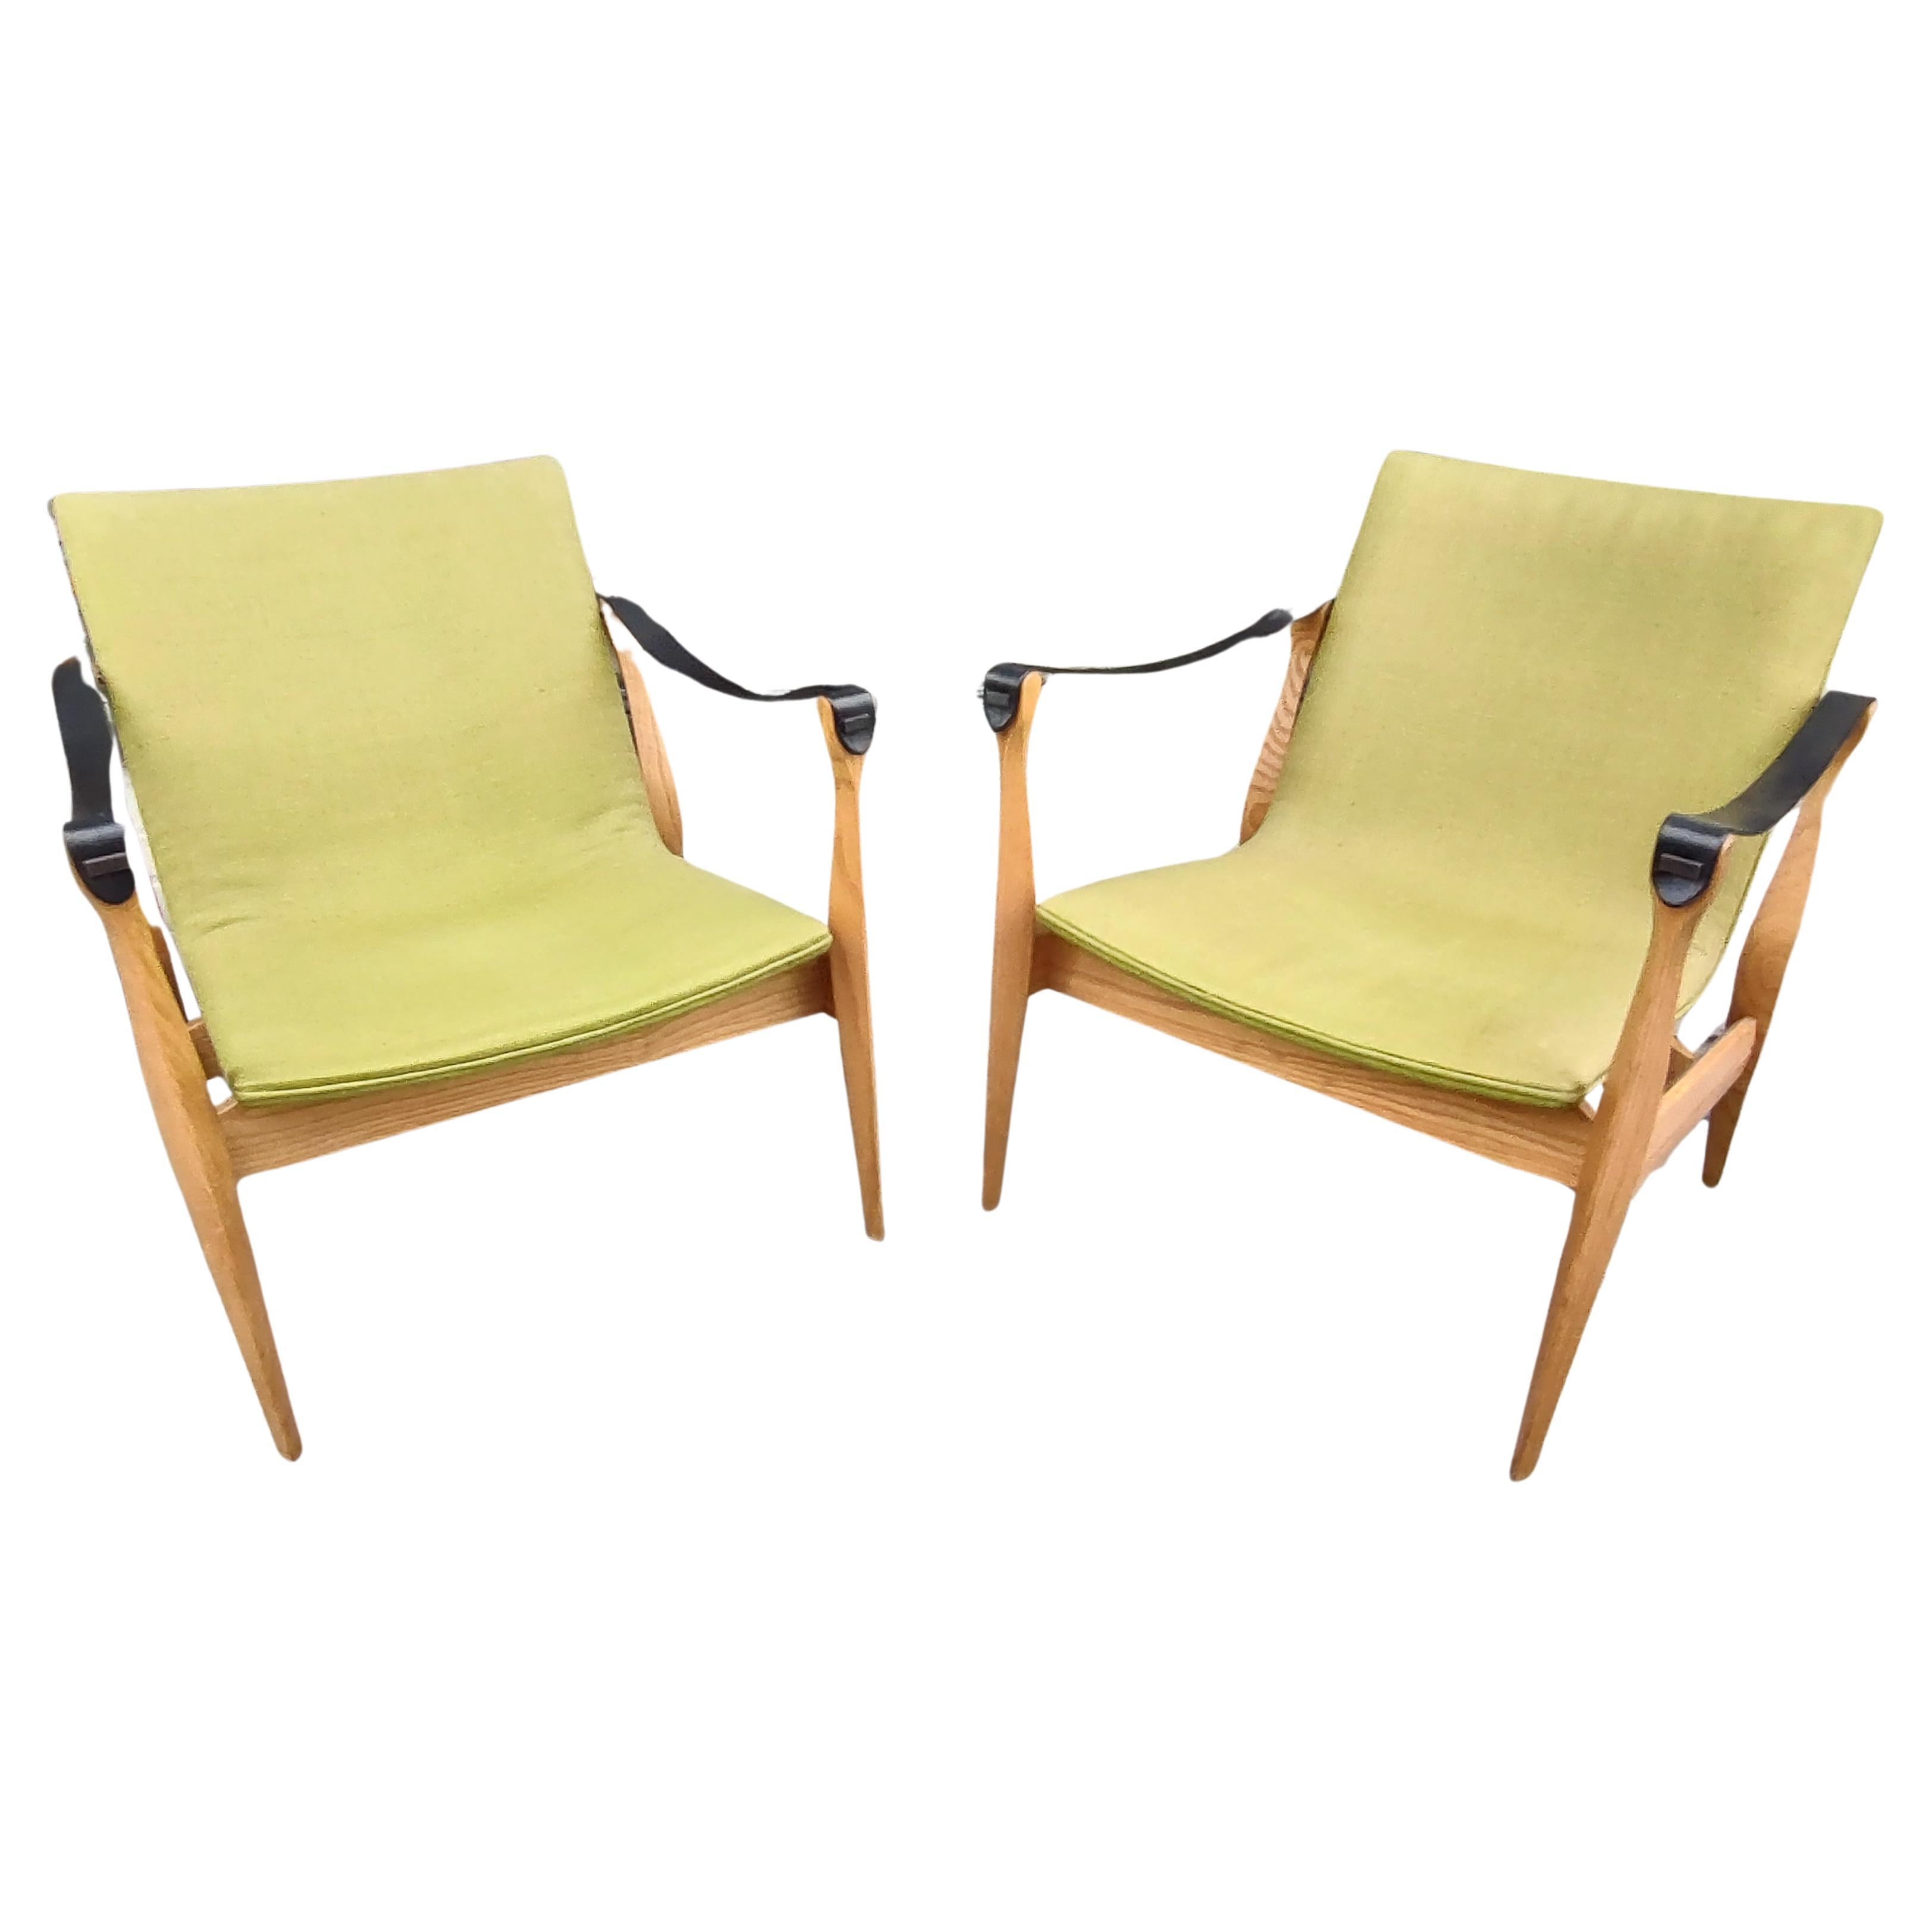 Scandinavian Modern Pair of Mid-Century Modern Safari Chairs by Karen & Ebbe Clemmensen 4 Hansen For Sale